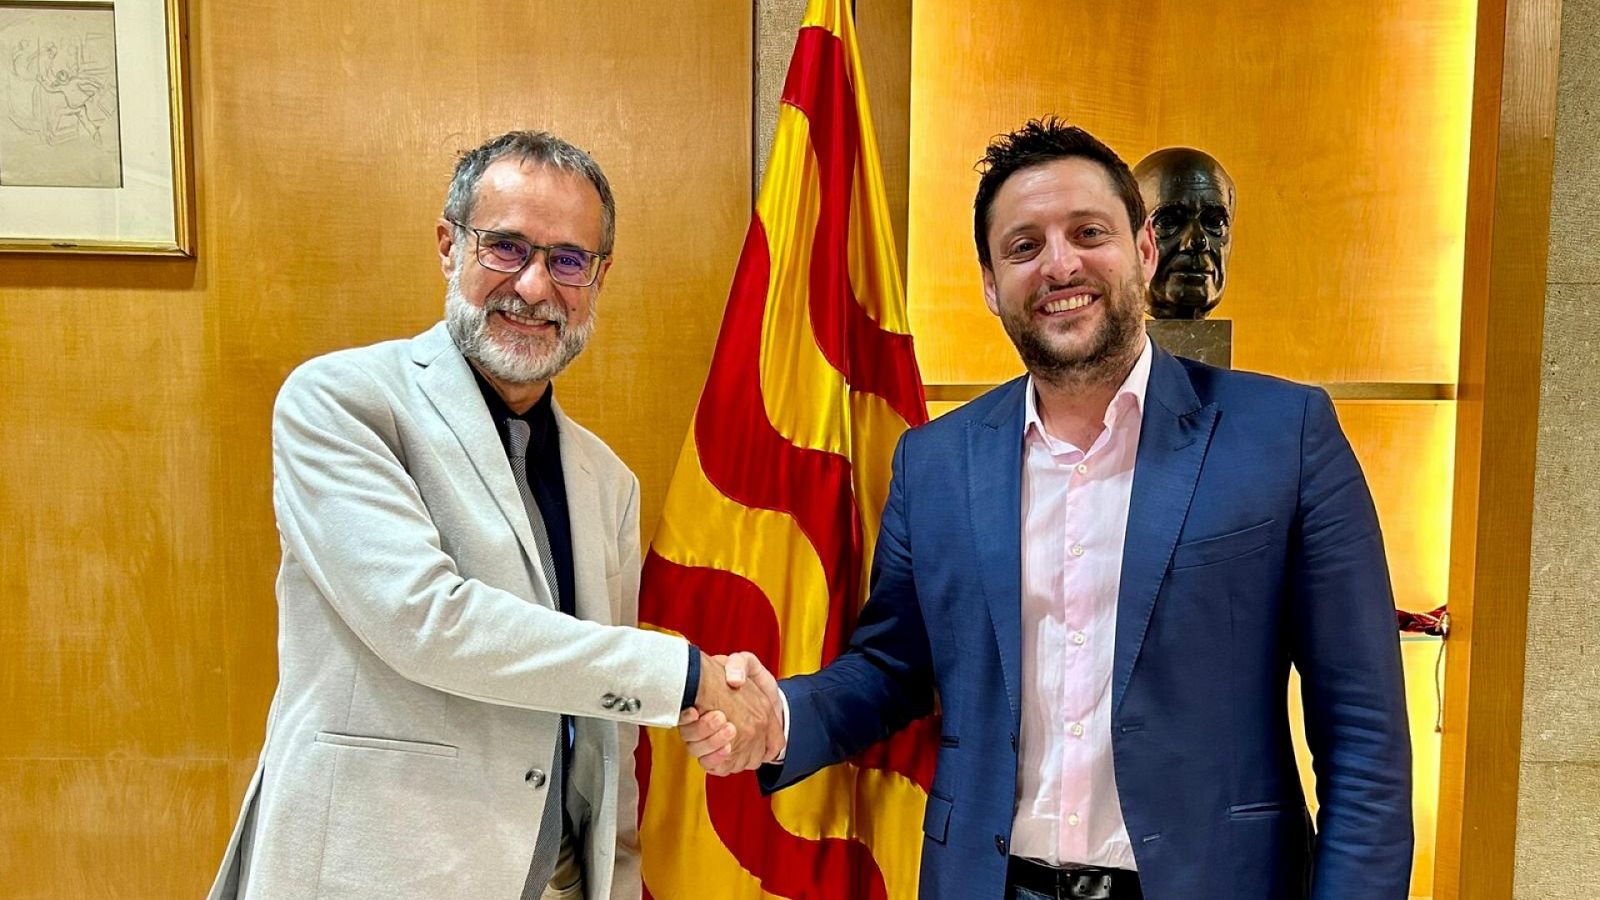 Esteve Crepo i Rubén Viñuales s'estrenyen la mà, confirmant l'acord